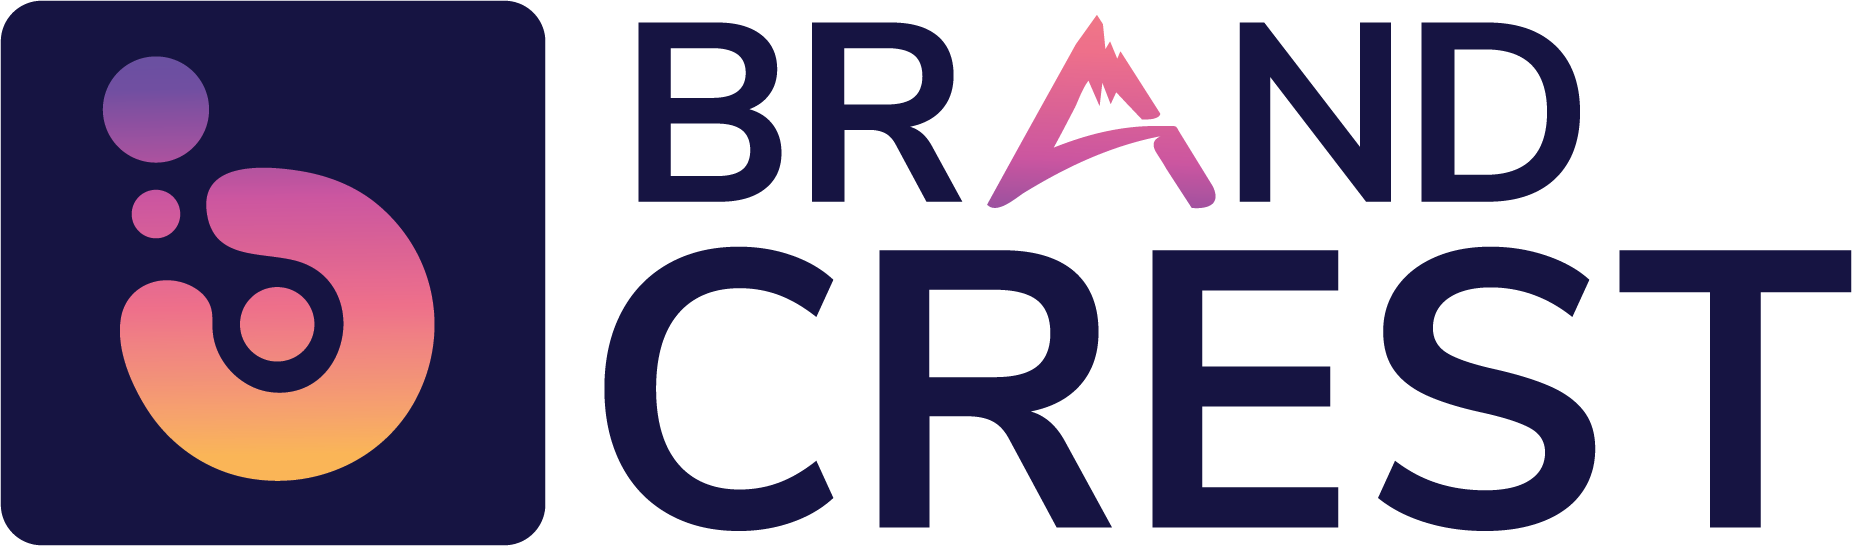 Brand Crest